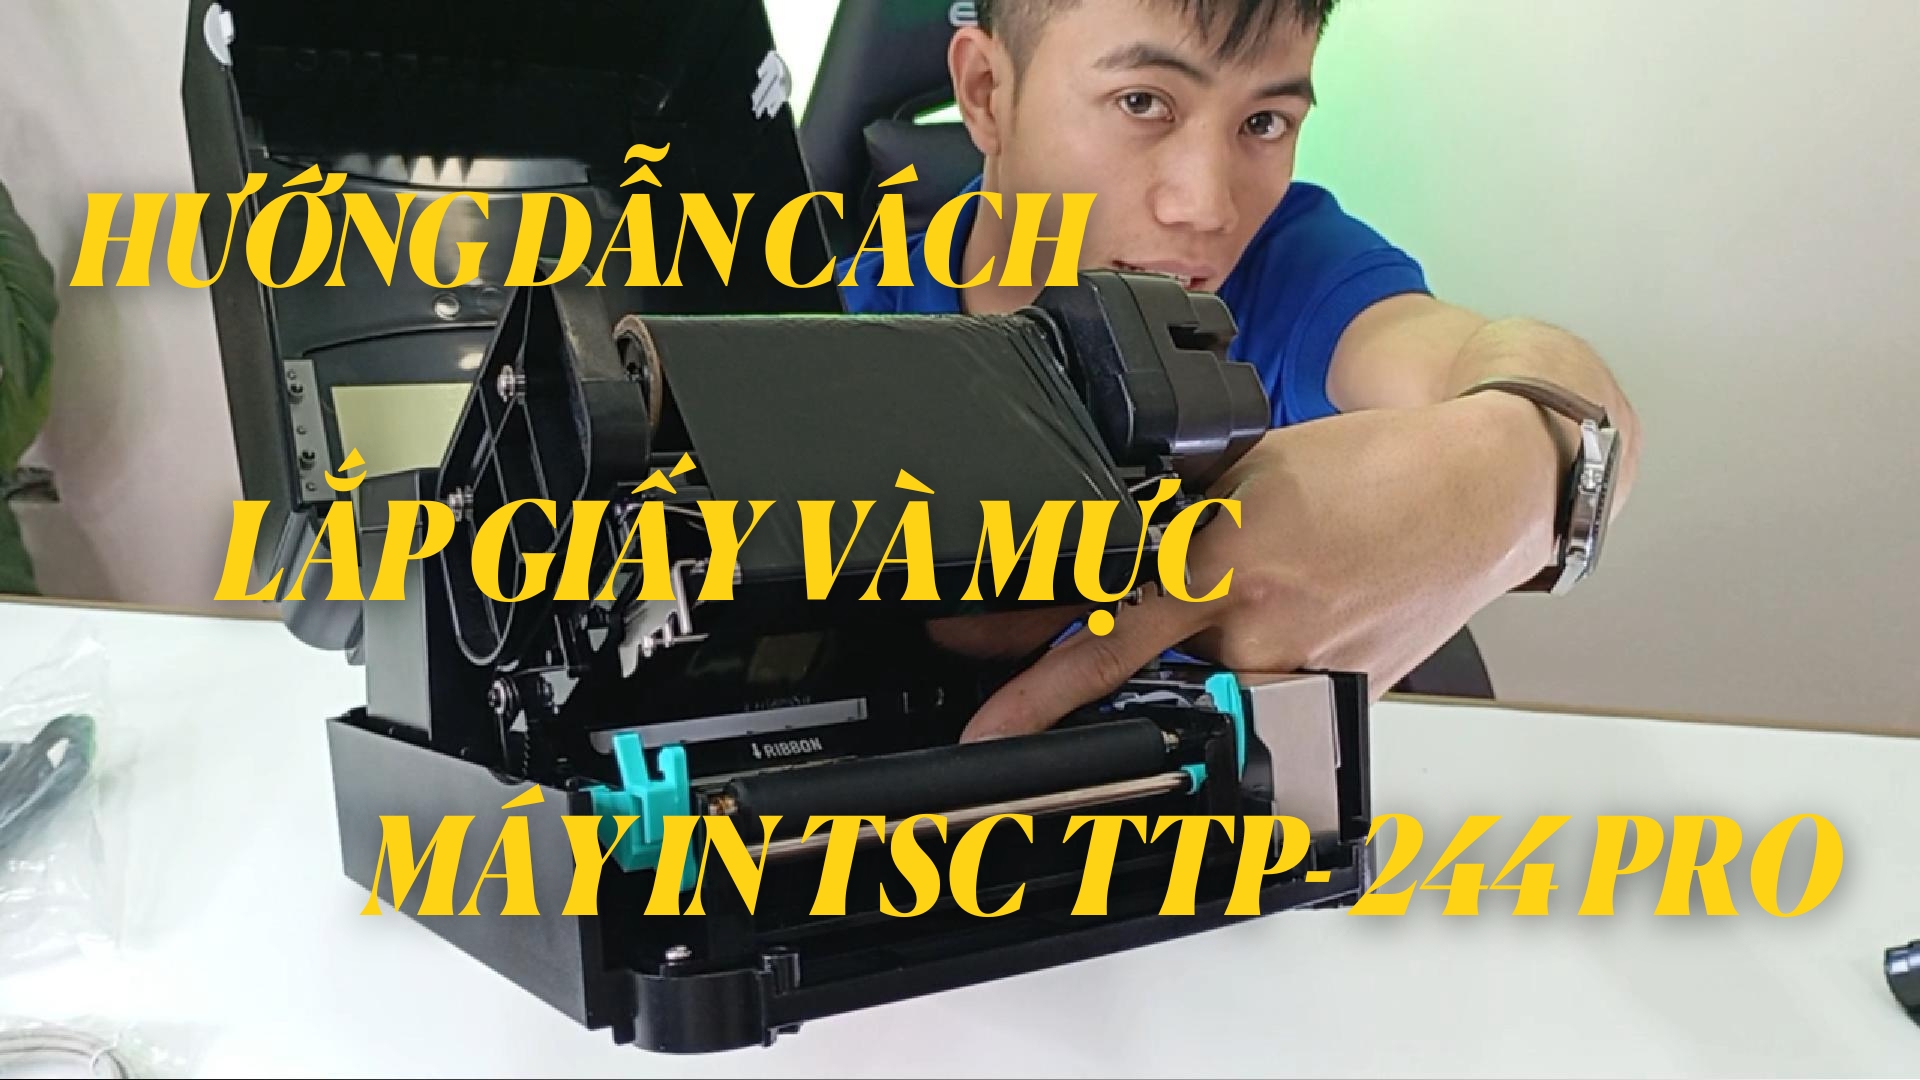 Hướng dẫn cách lắp giấy và mực trên máy in TSC TTP 244 Pro